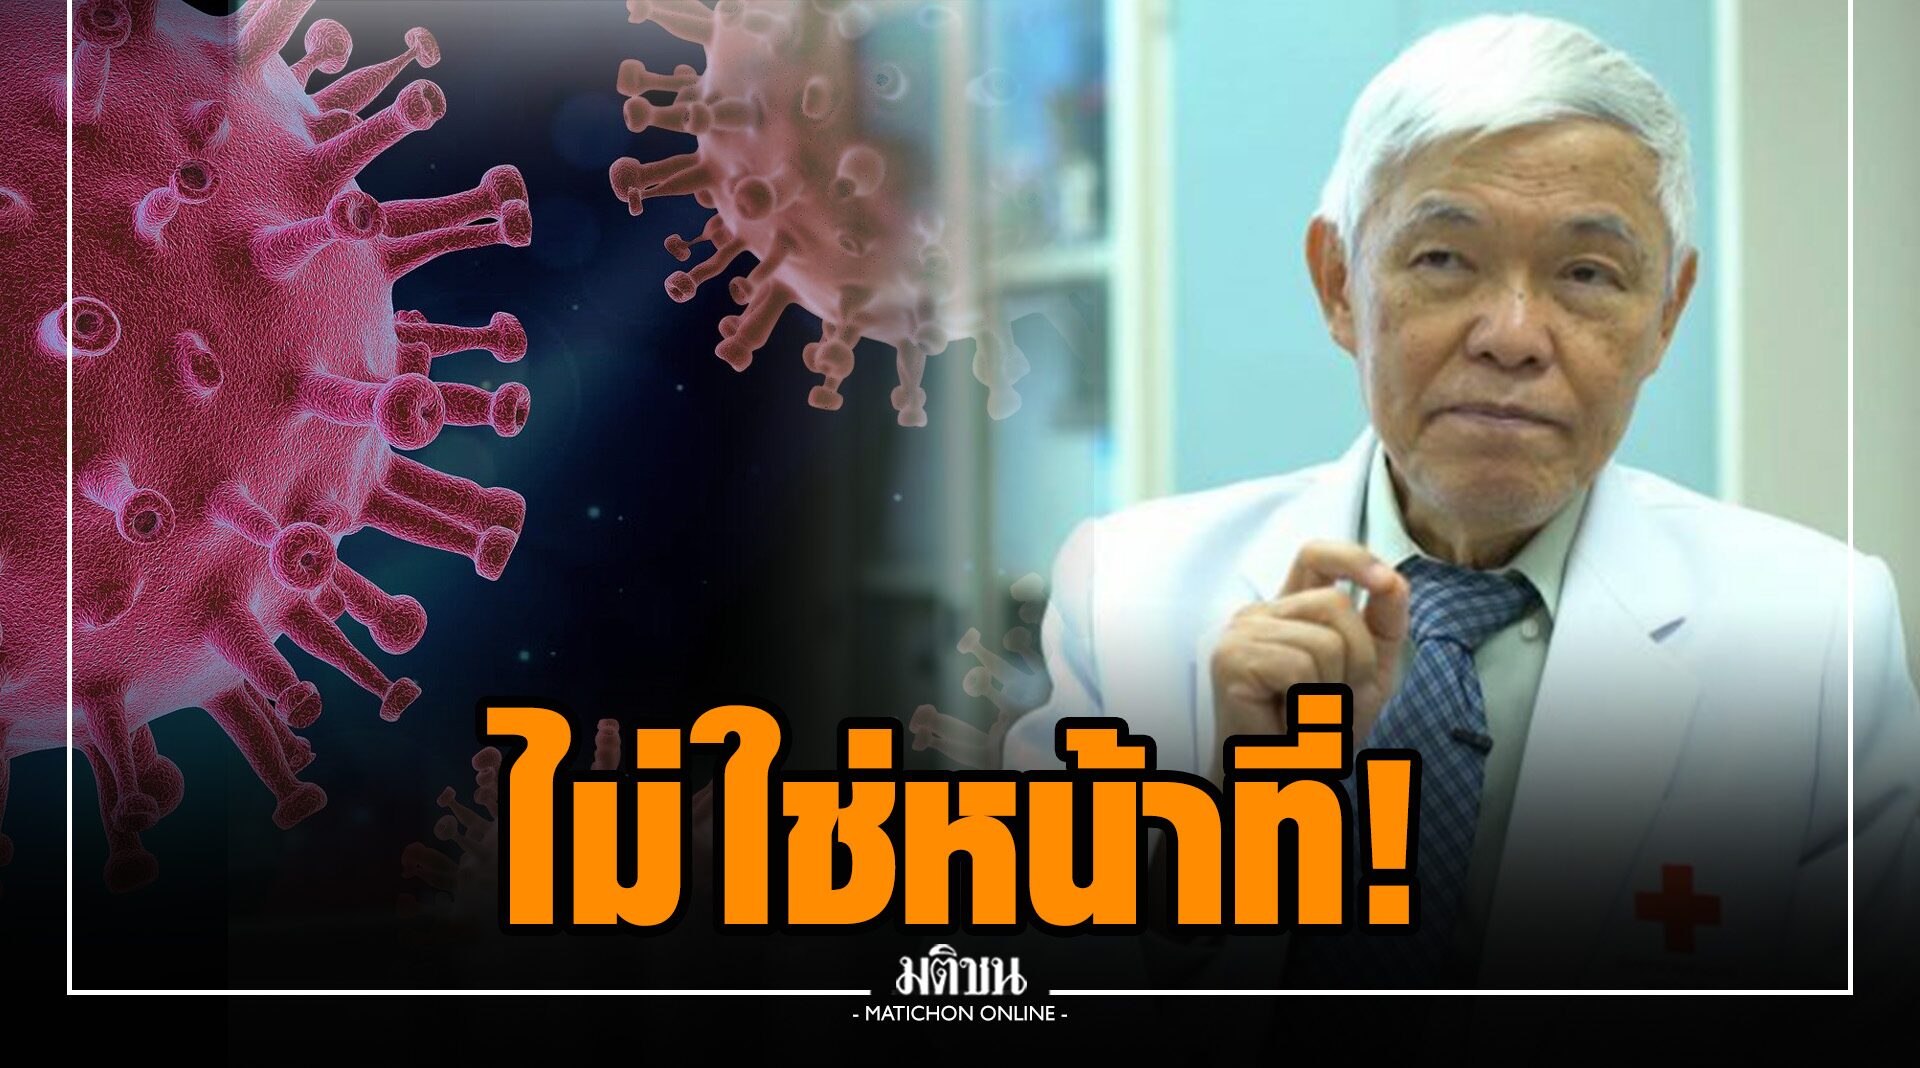 'โอไมครอน' นักวิชาการไทยตั้งชื่อ นู 'หมอยง' ติง ตั้งชื่อสายพันธุ์ใหม่เป็นหน้าที่ WHO